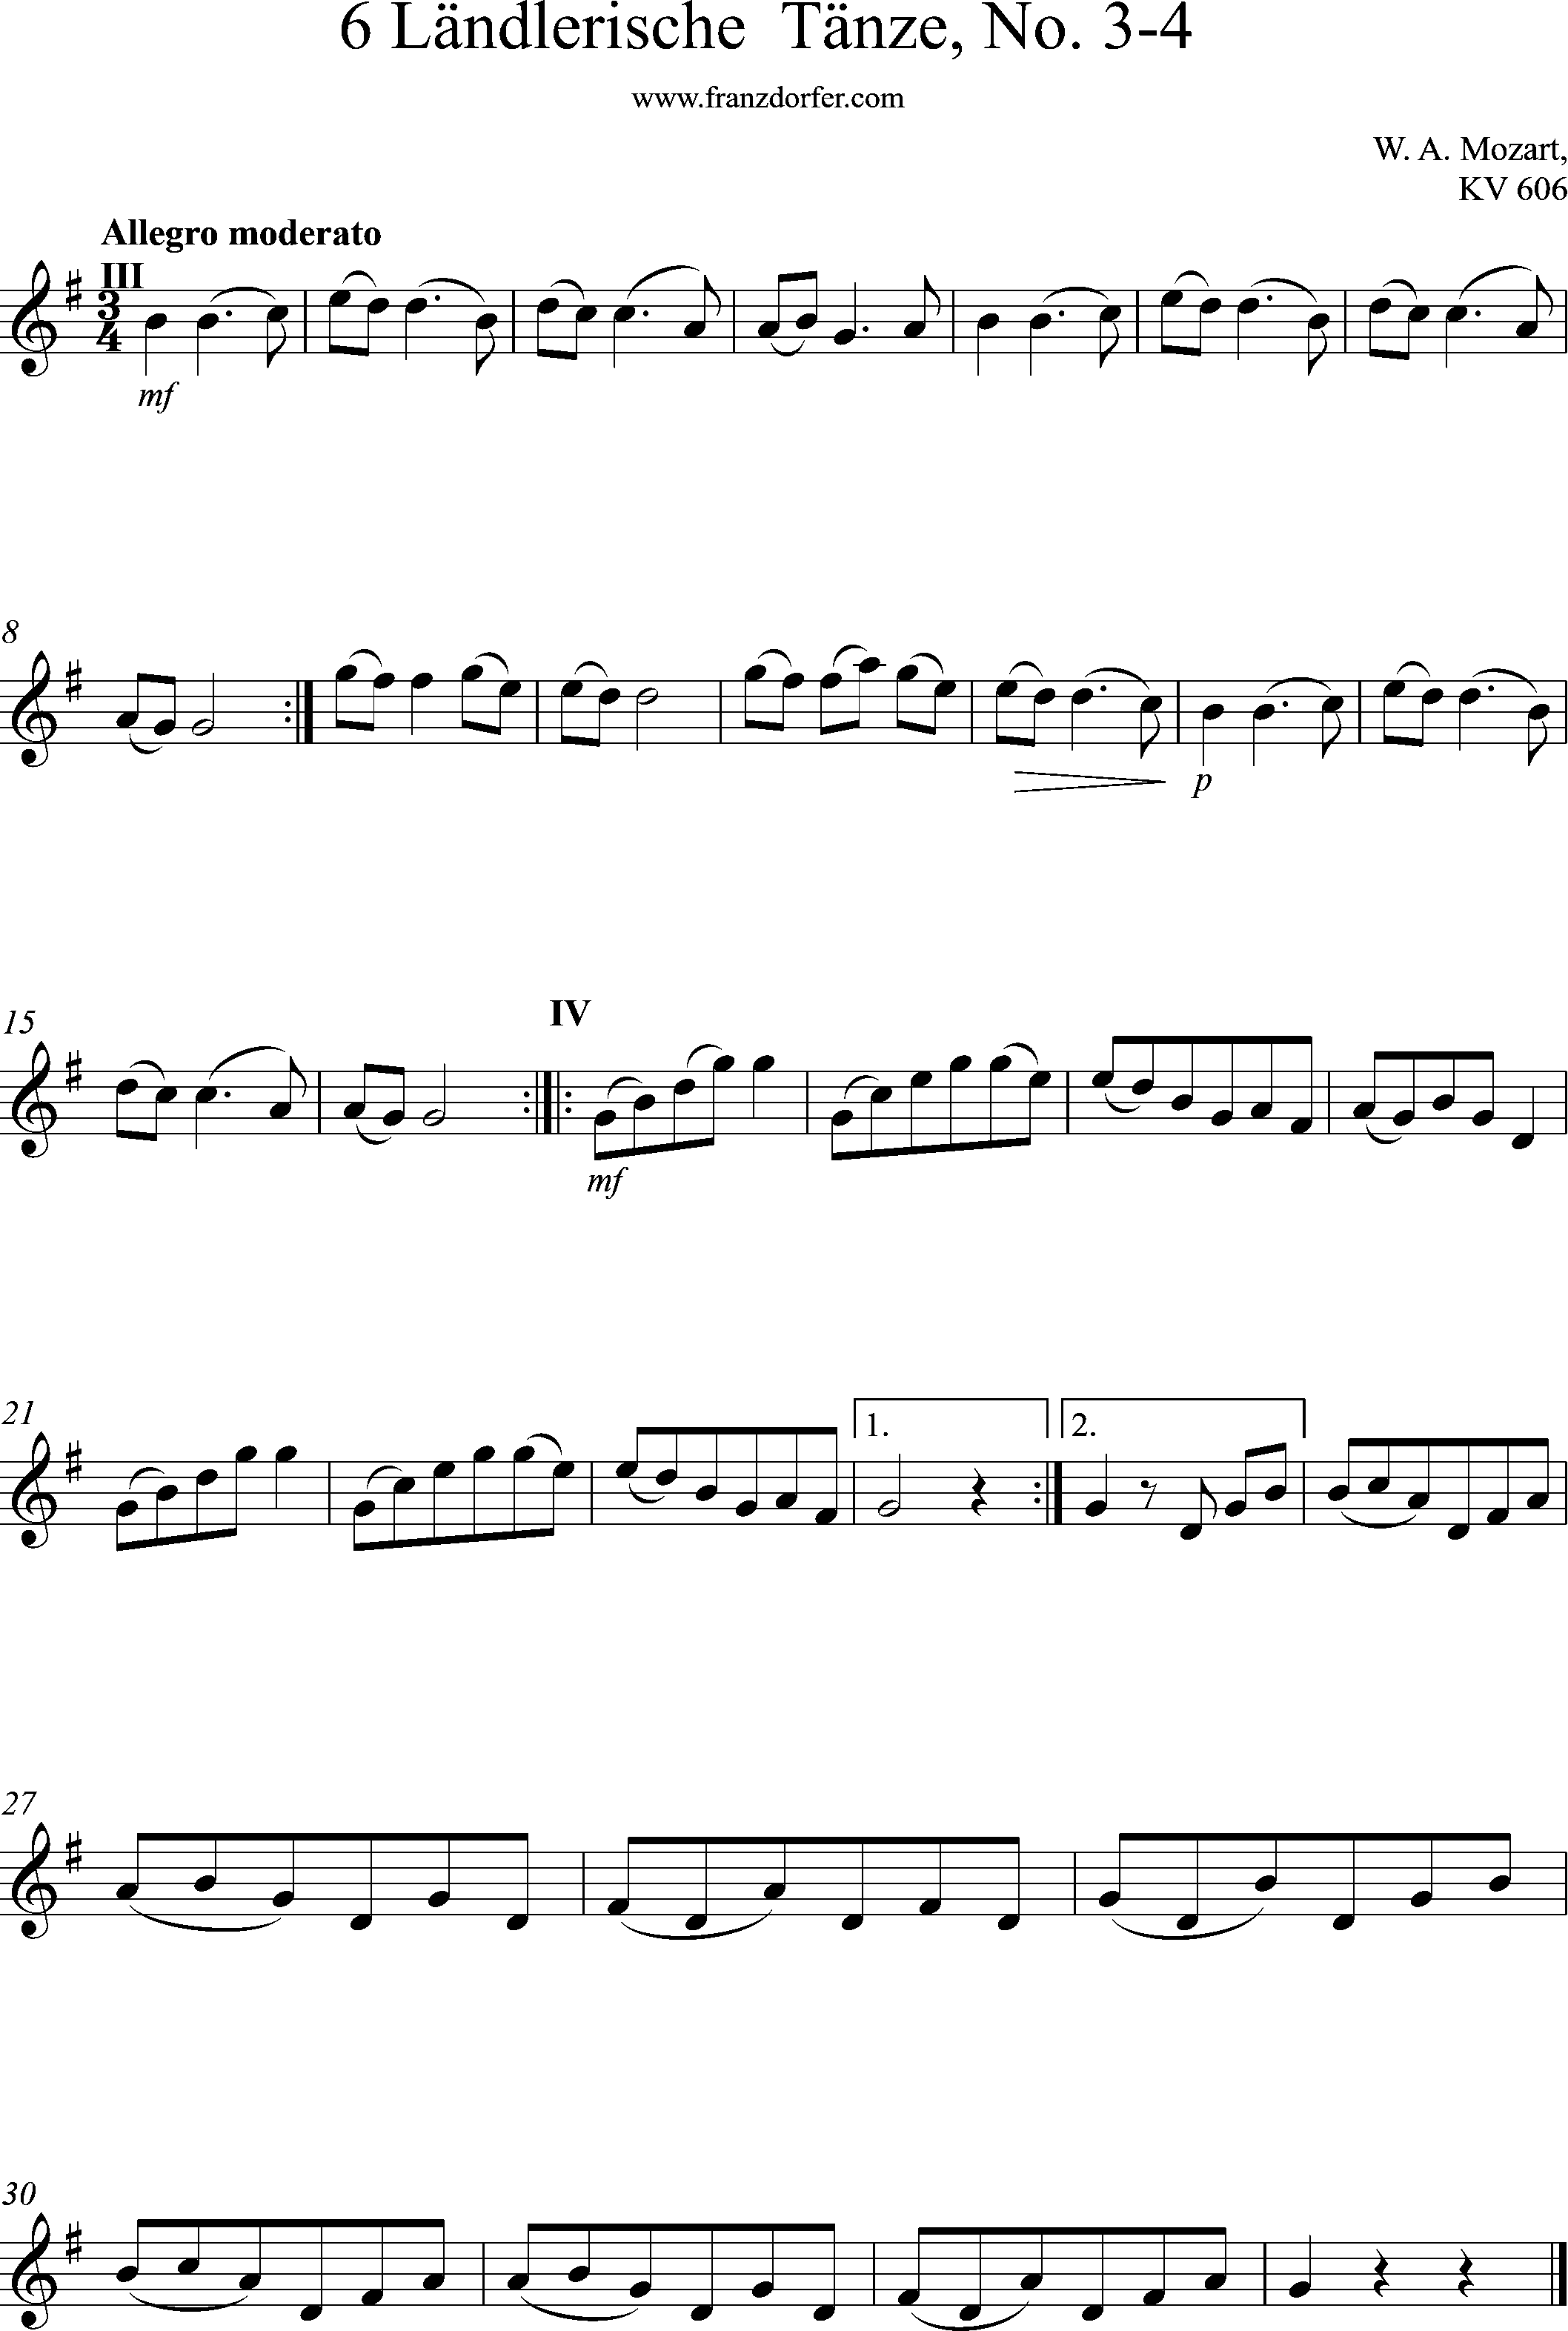 Clarinet Part 6 länlerische Tänze, G-Major